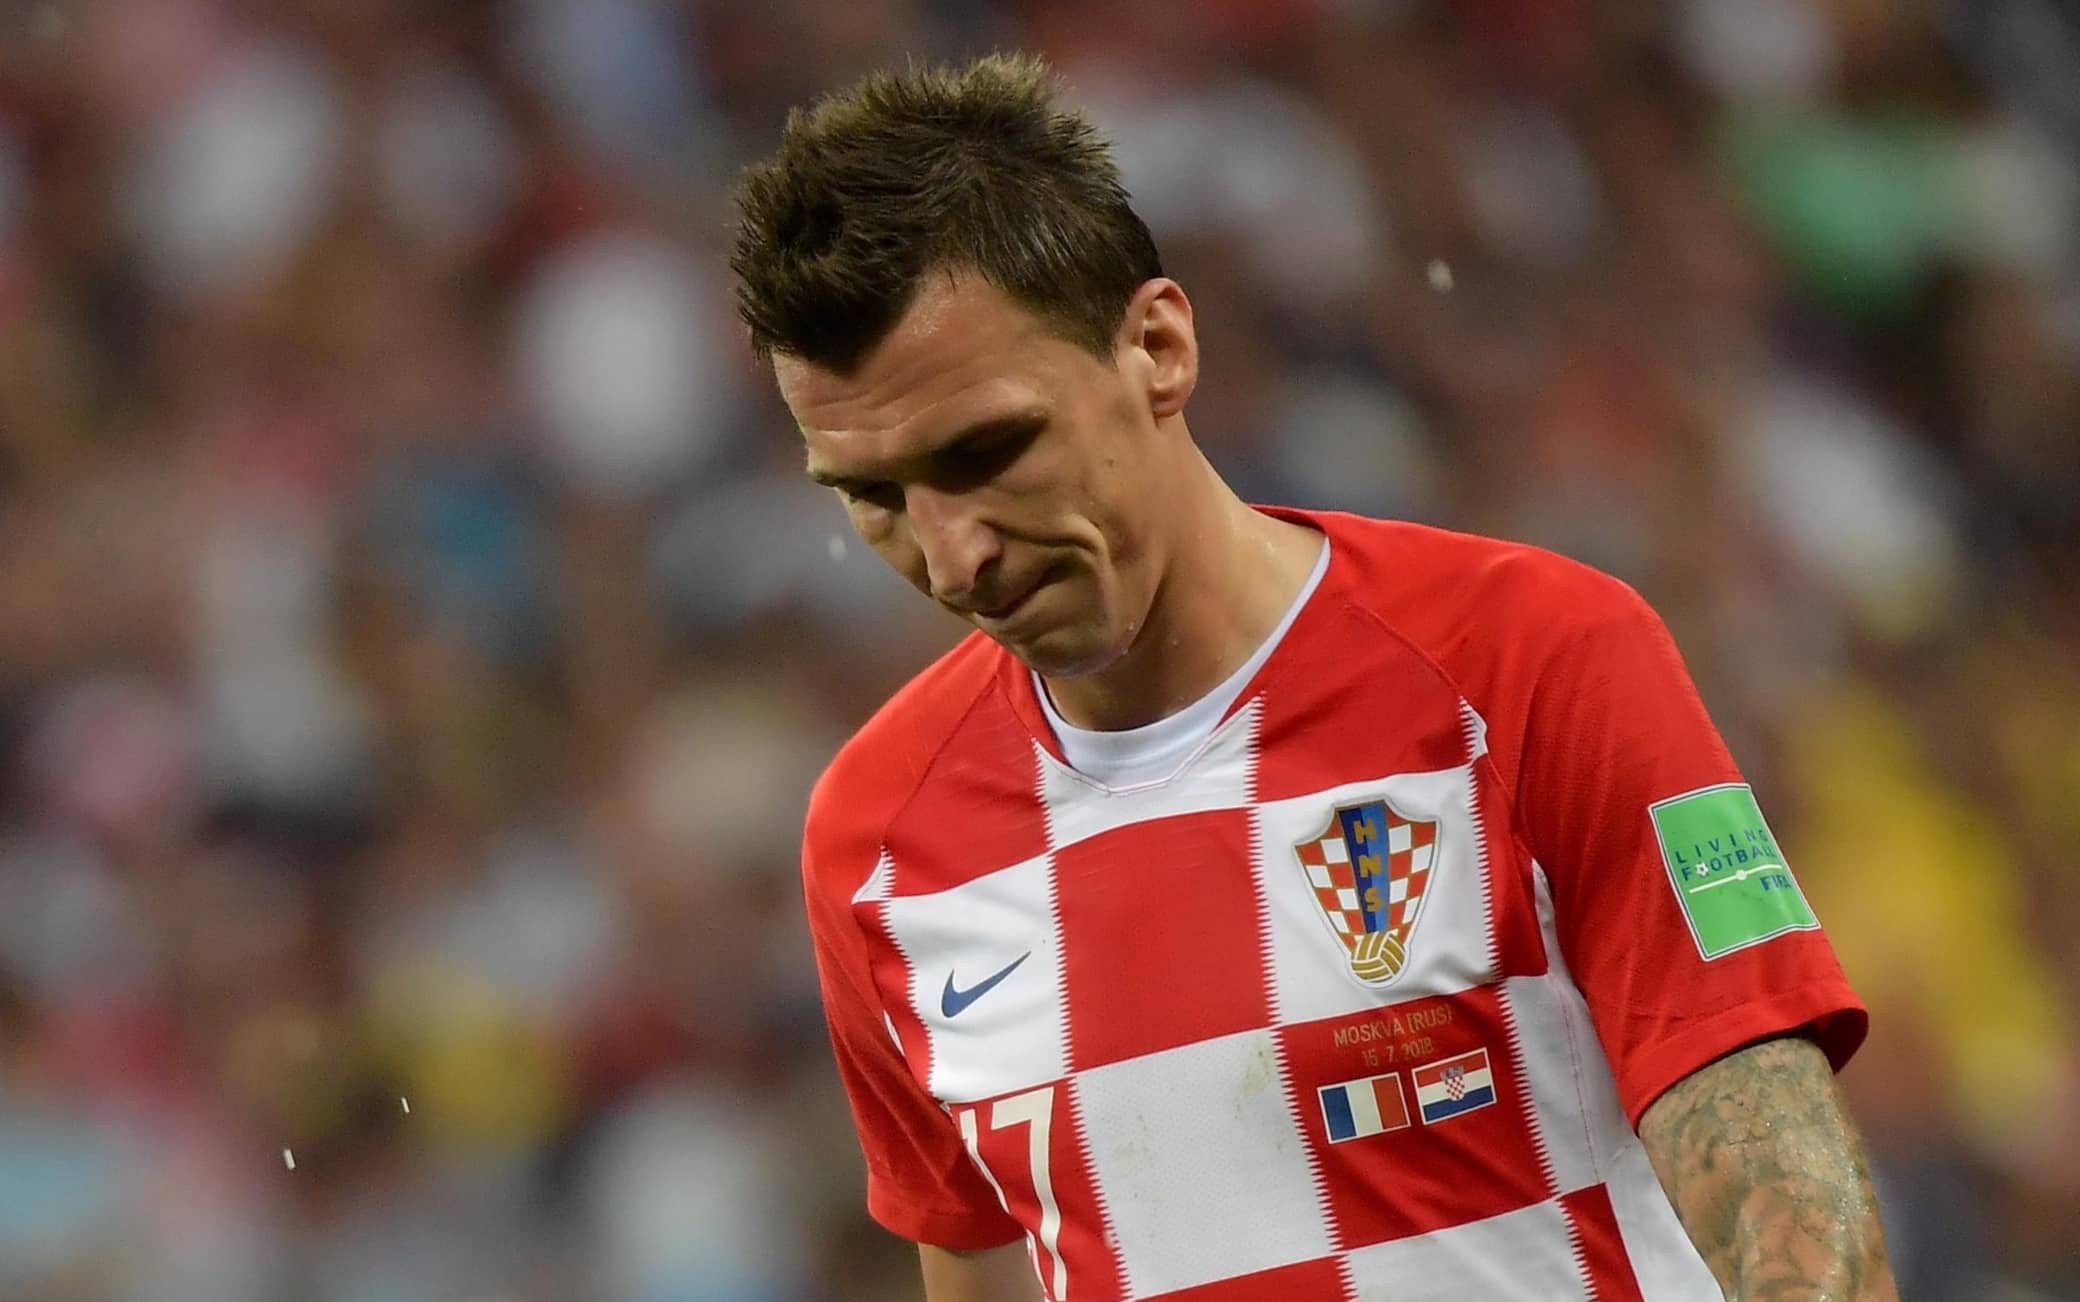 La delusione di Mandzukic dopo l'autogol nella finale Francia-Croazia